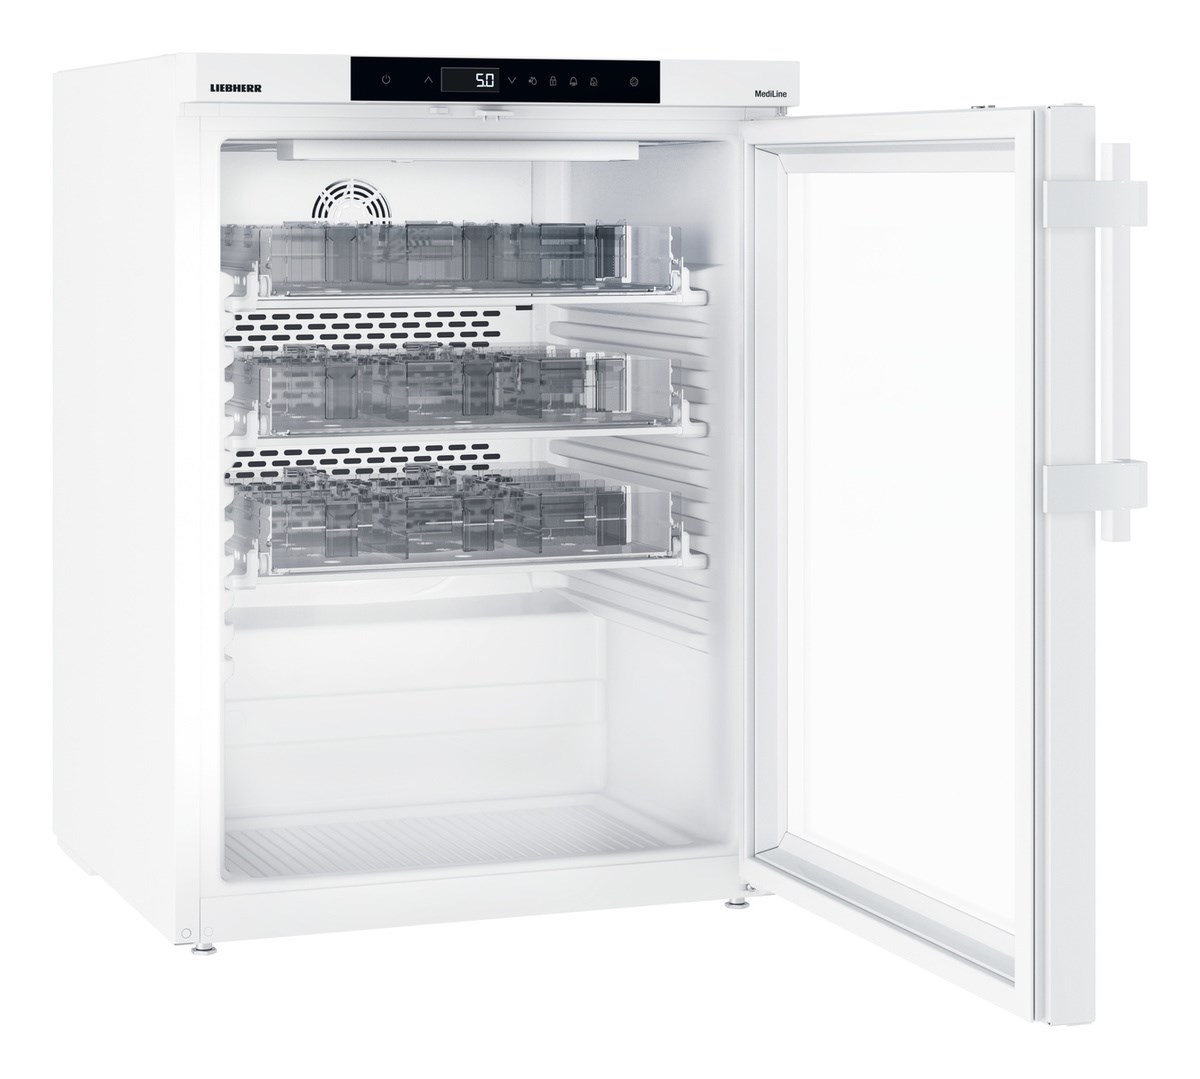 MKUv 1613-H63 Mediline - vitrínová lekárenská chladnička podľa normy DIN 13277